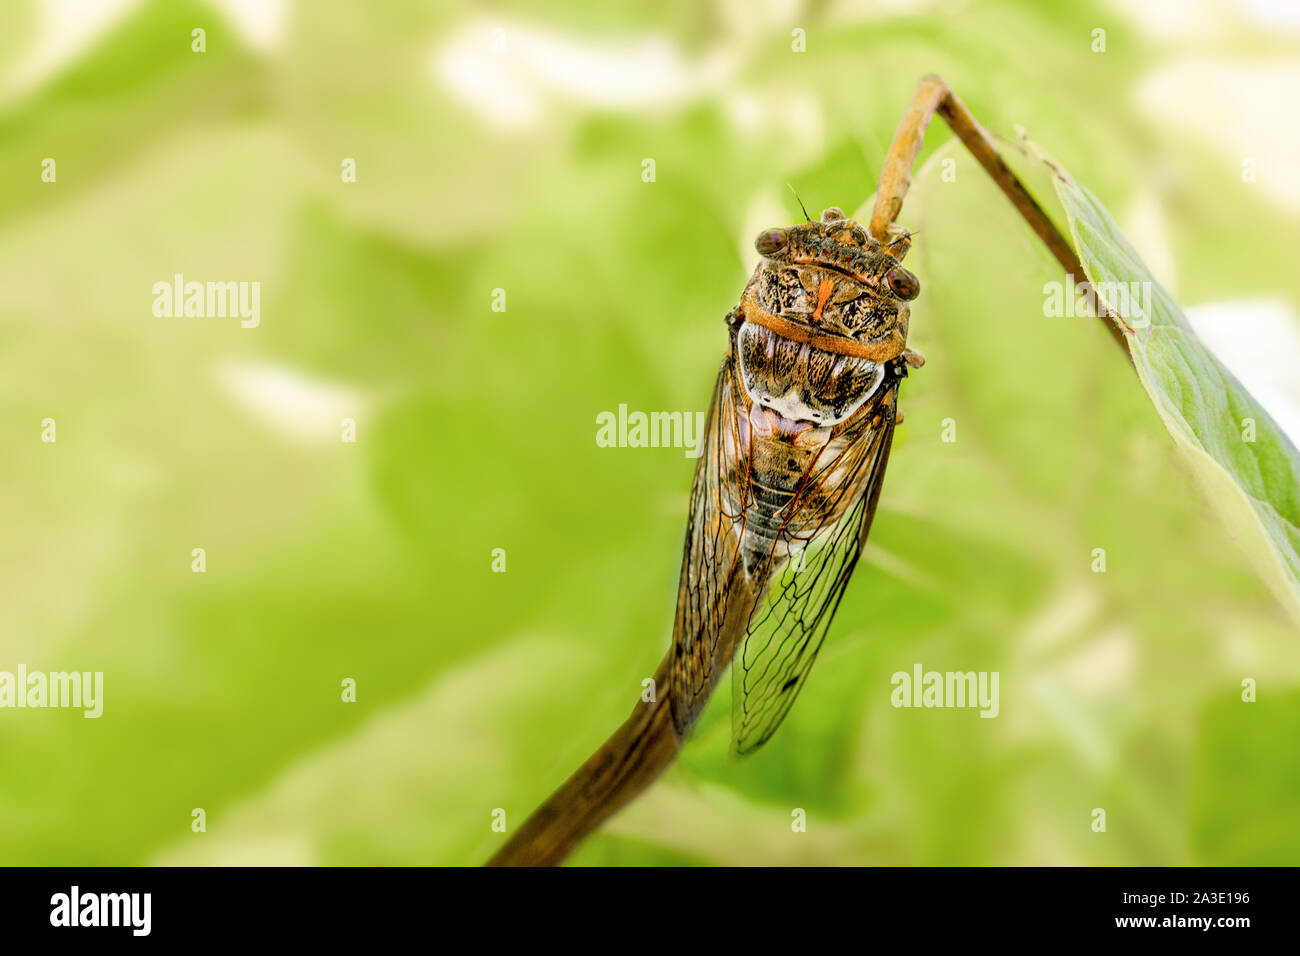 Schönen Insekt auf Ast. Zikade auf grünem Blatt. Das Konzept der biologischen Vielfalt. In der Nähe von Insekten Zikaden mit durchsichtigen Flügeln. Insekten in der wilden Natur, Park, Wald. Stockfoto